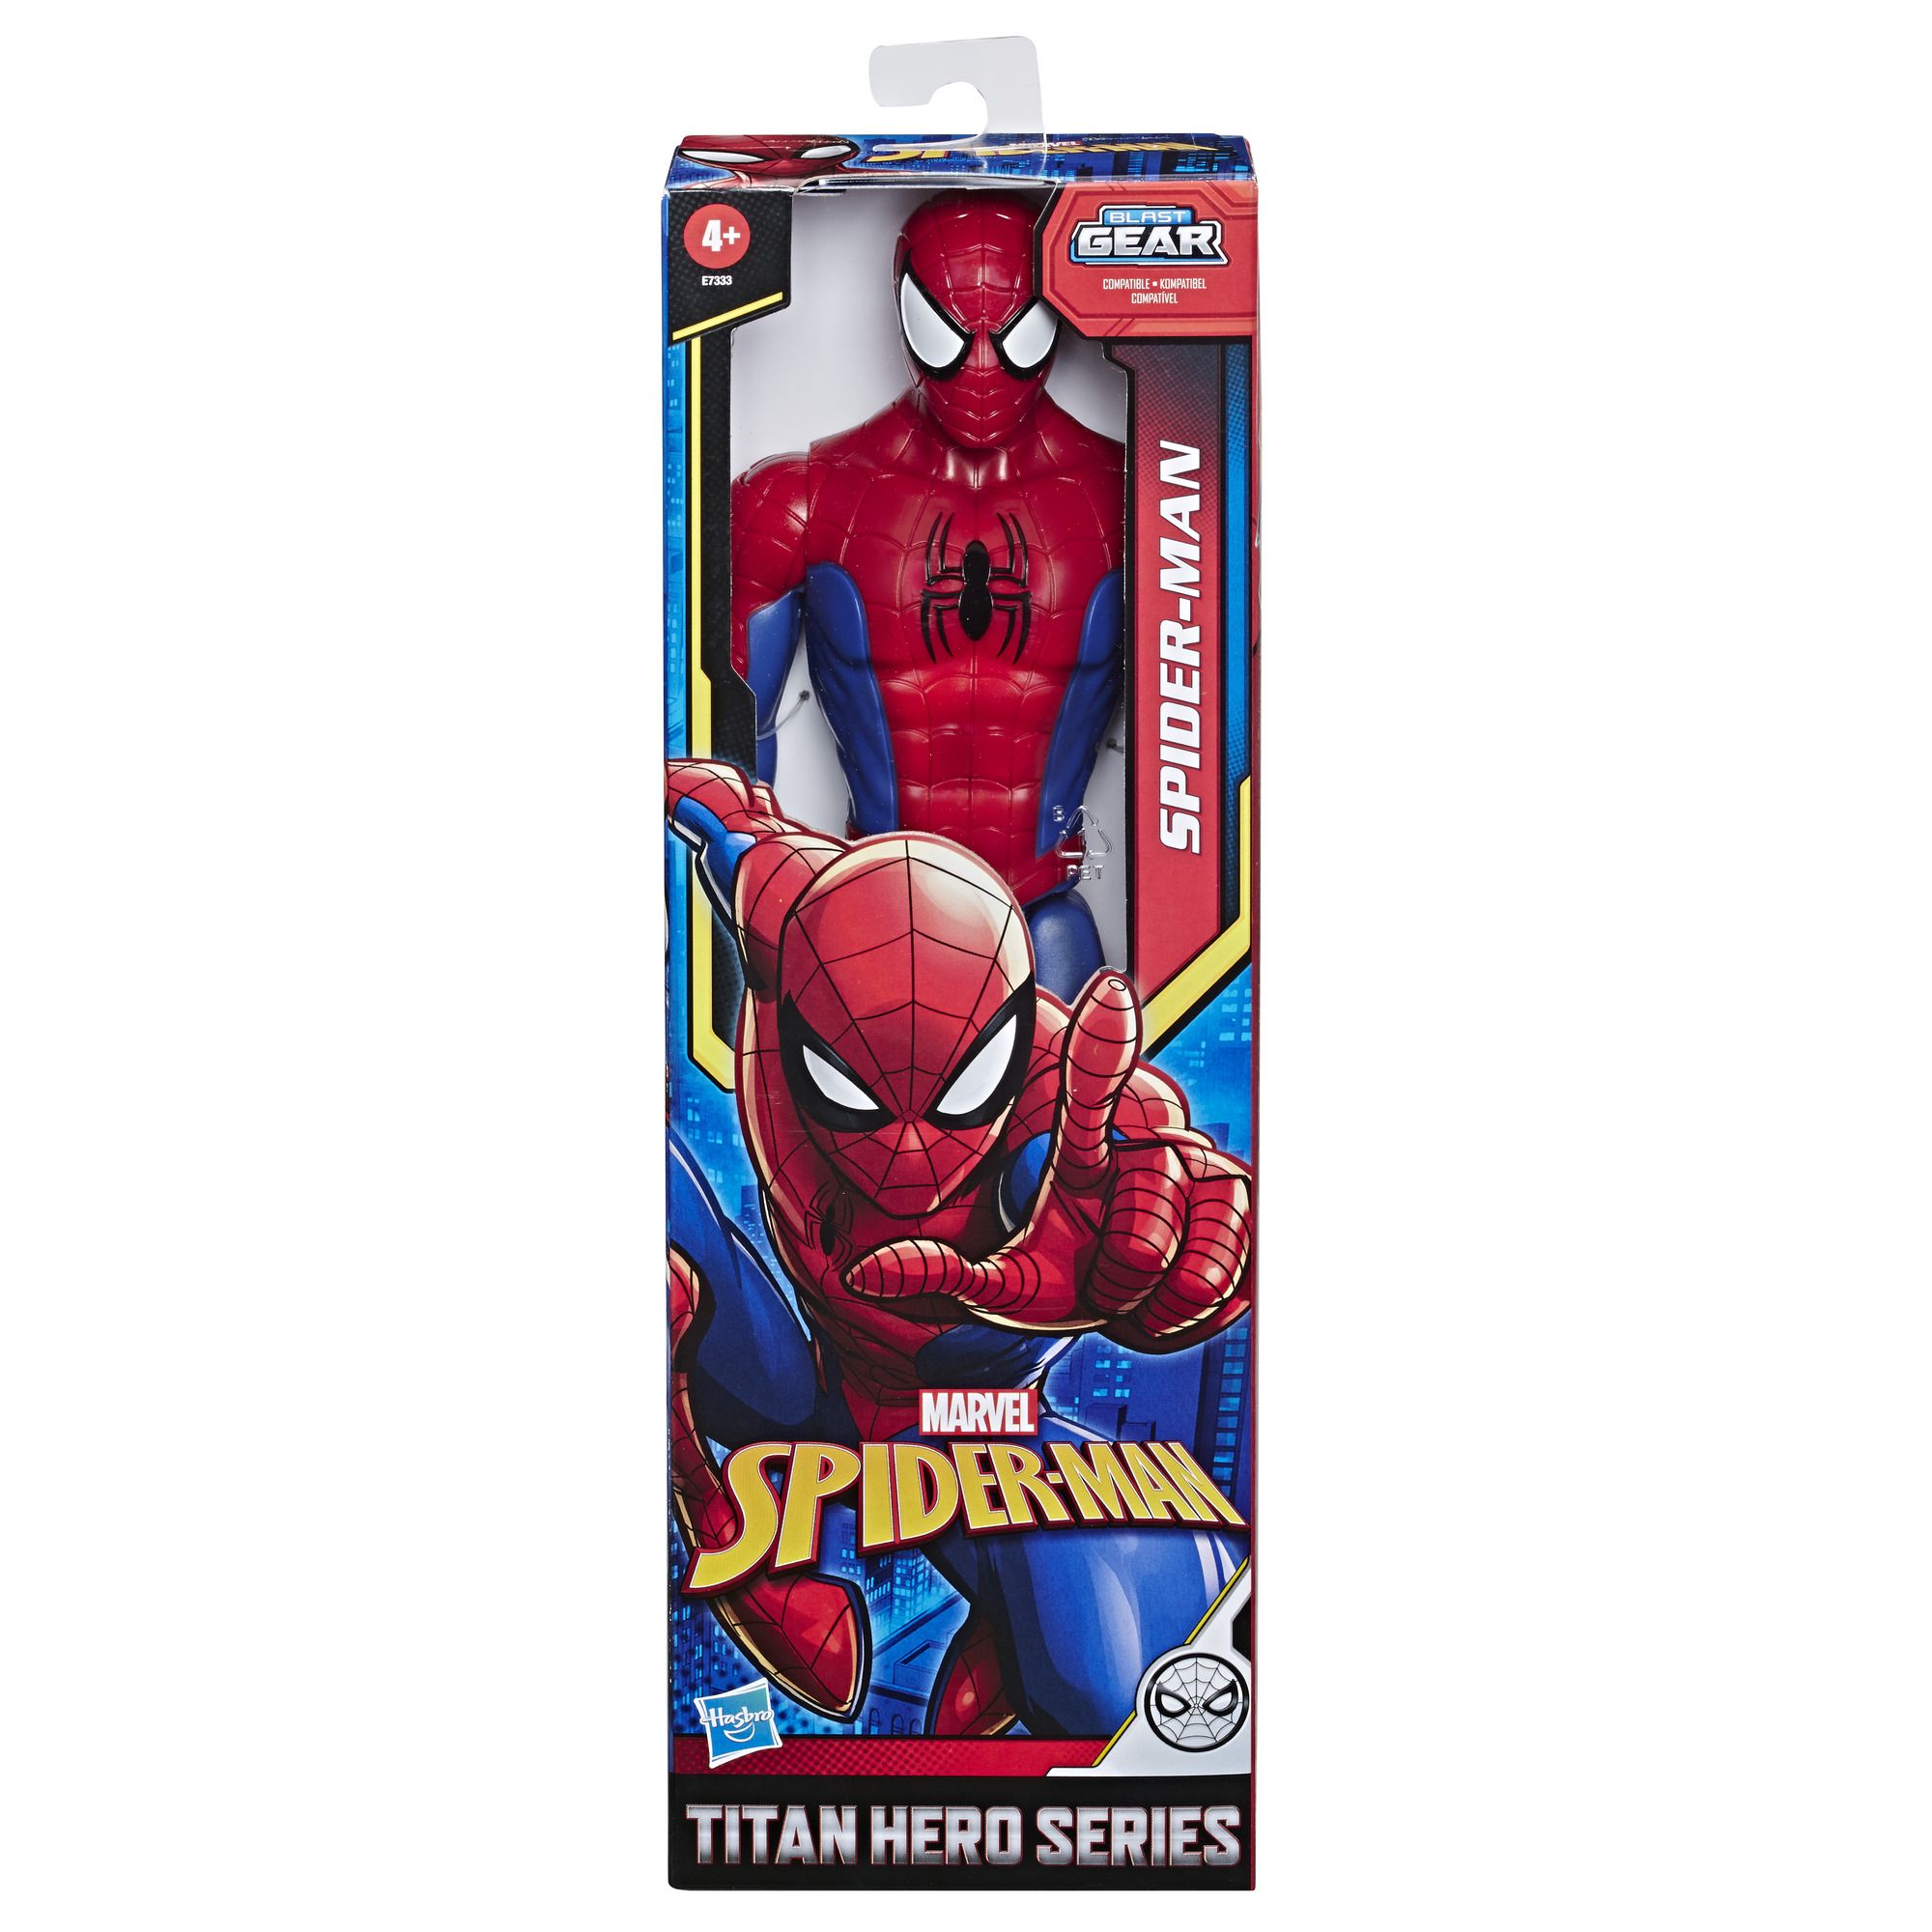 An image of Marvel Spider-Man Titan Hero Spider-Man